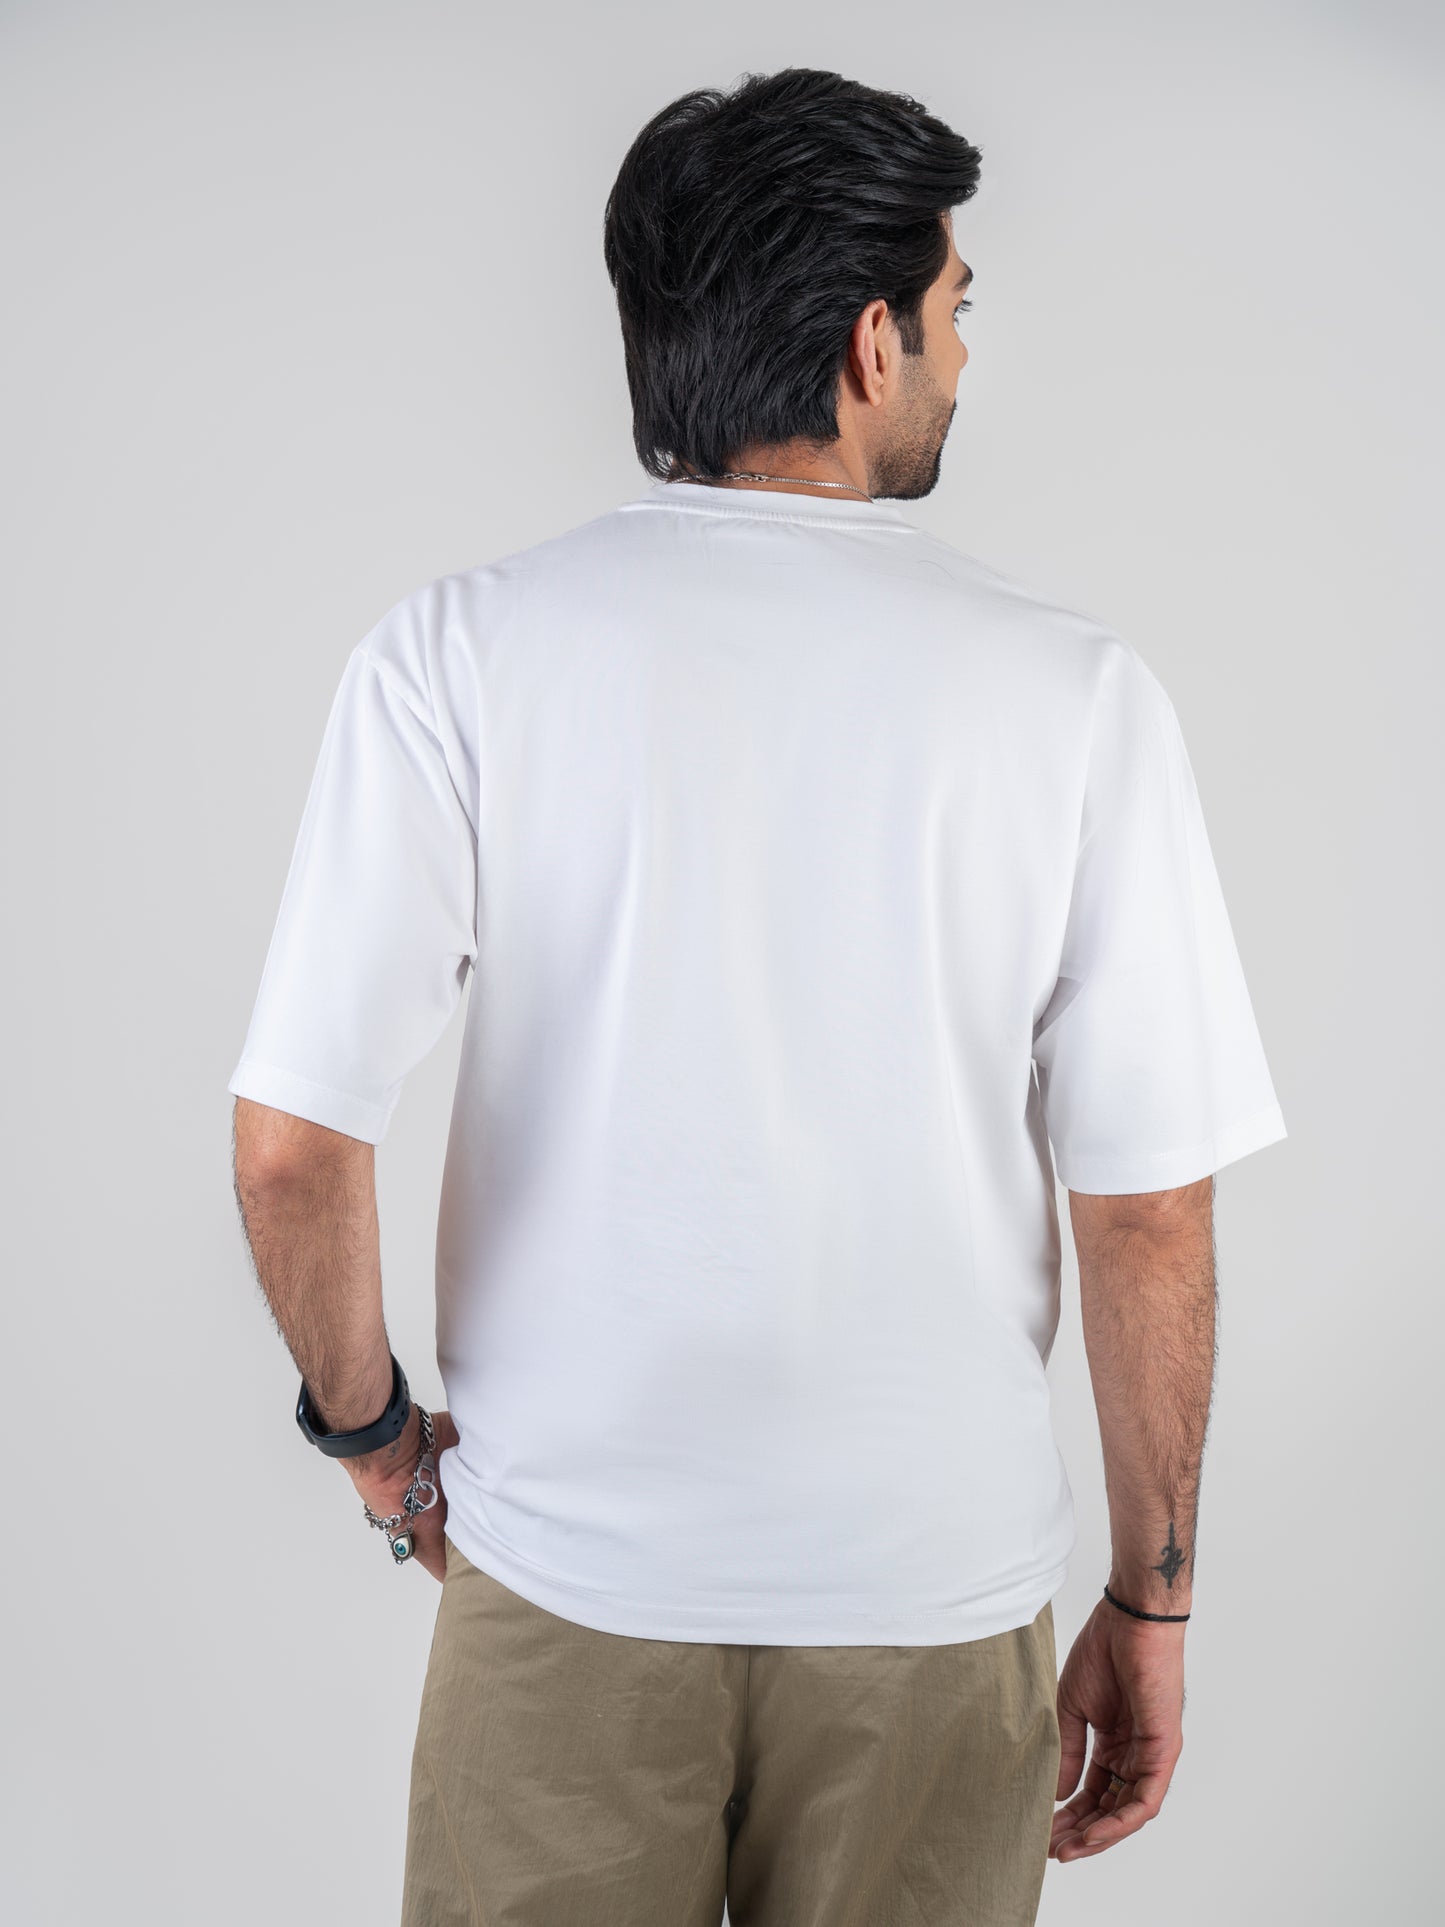 Shiva White DropShoulder T-Shirt